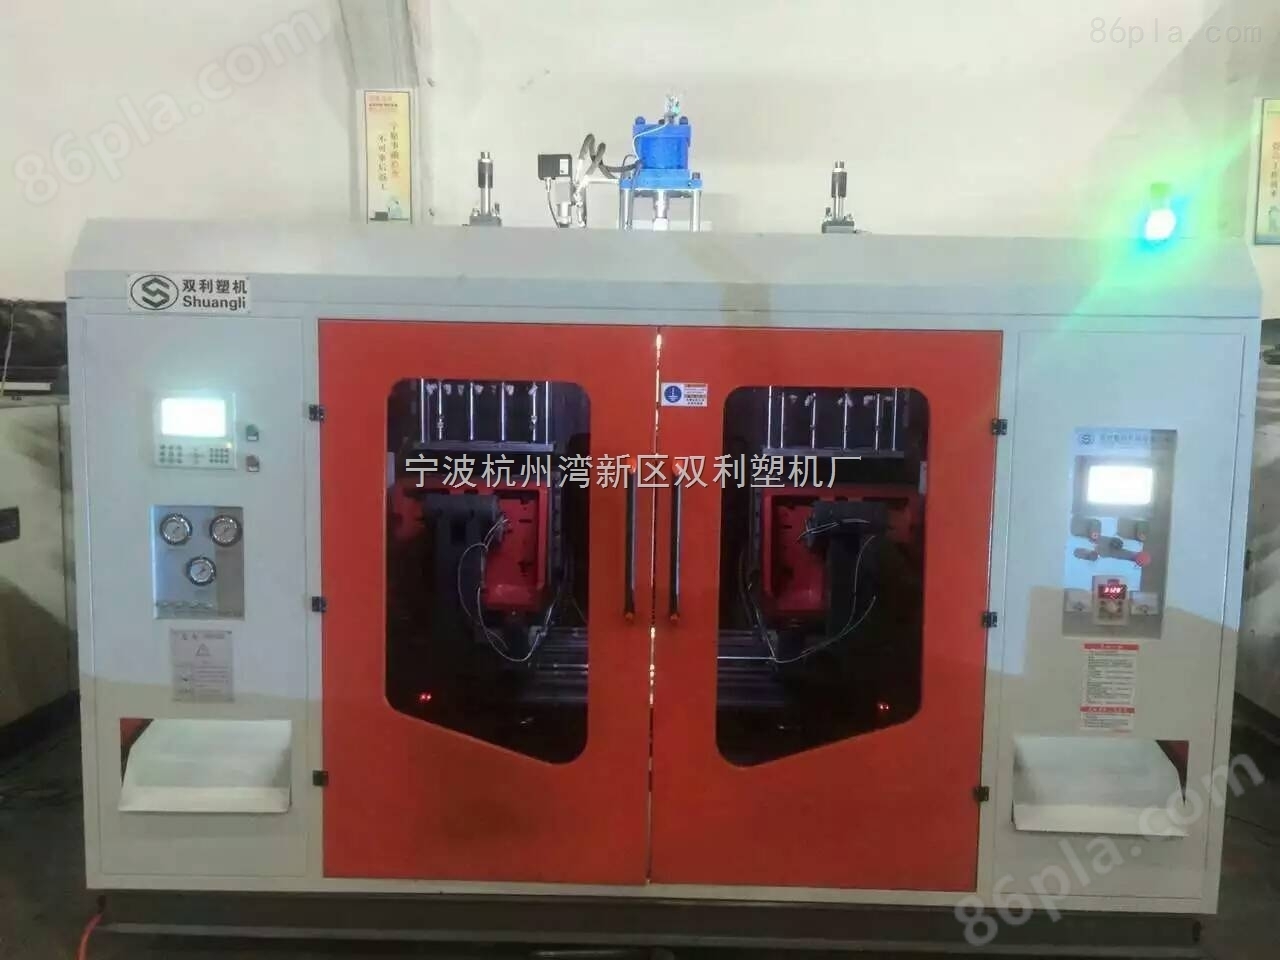 上海双利吹塑机生产厂家